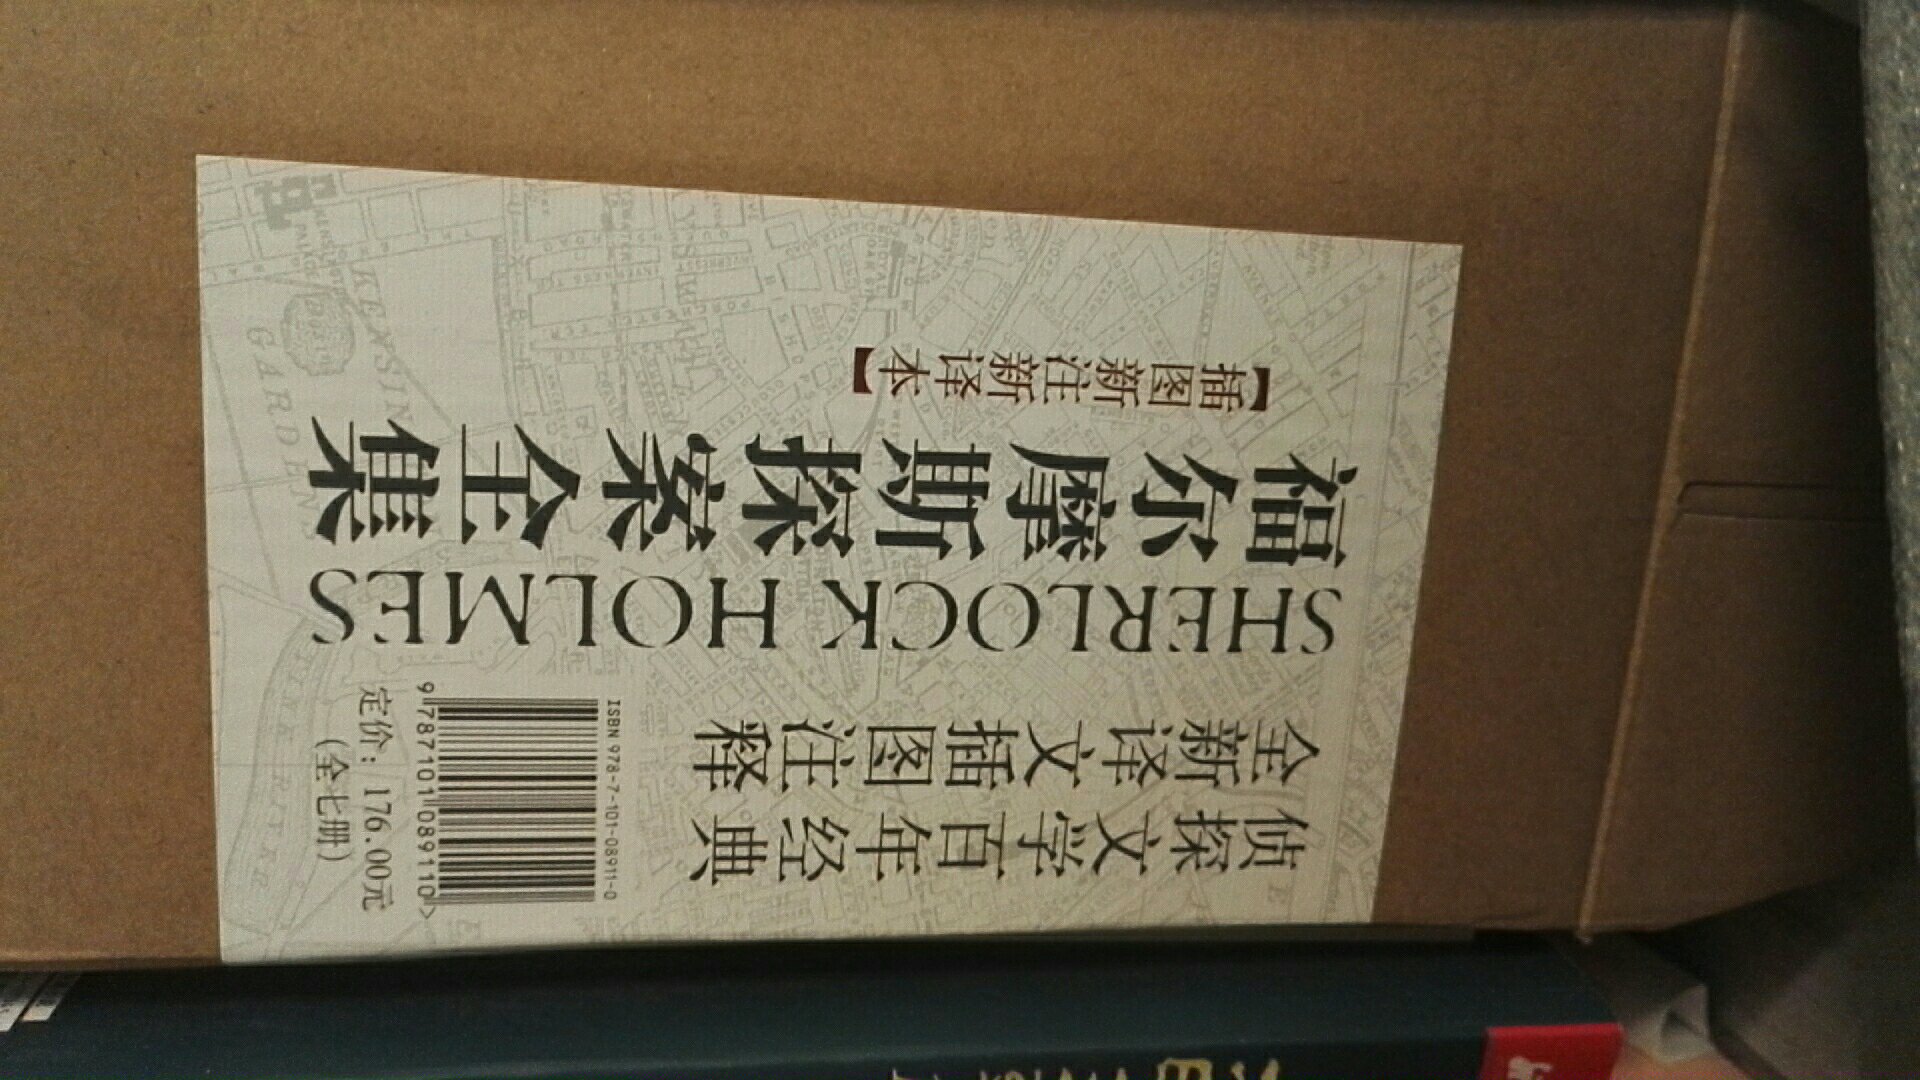 放松时候最喜欢读的小说之一。中华书局的书质量，翻译，精细程度都很好。